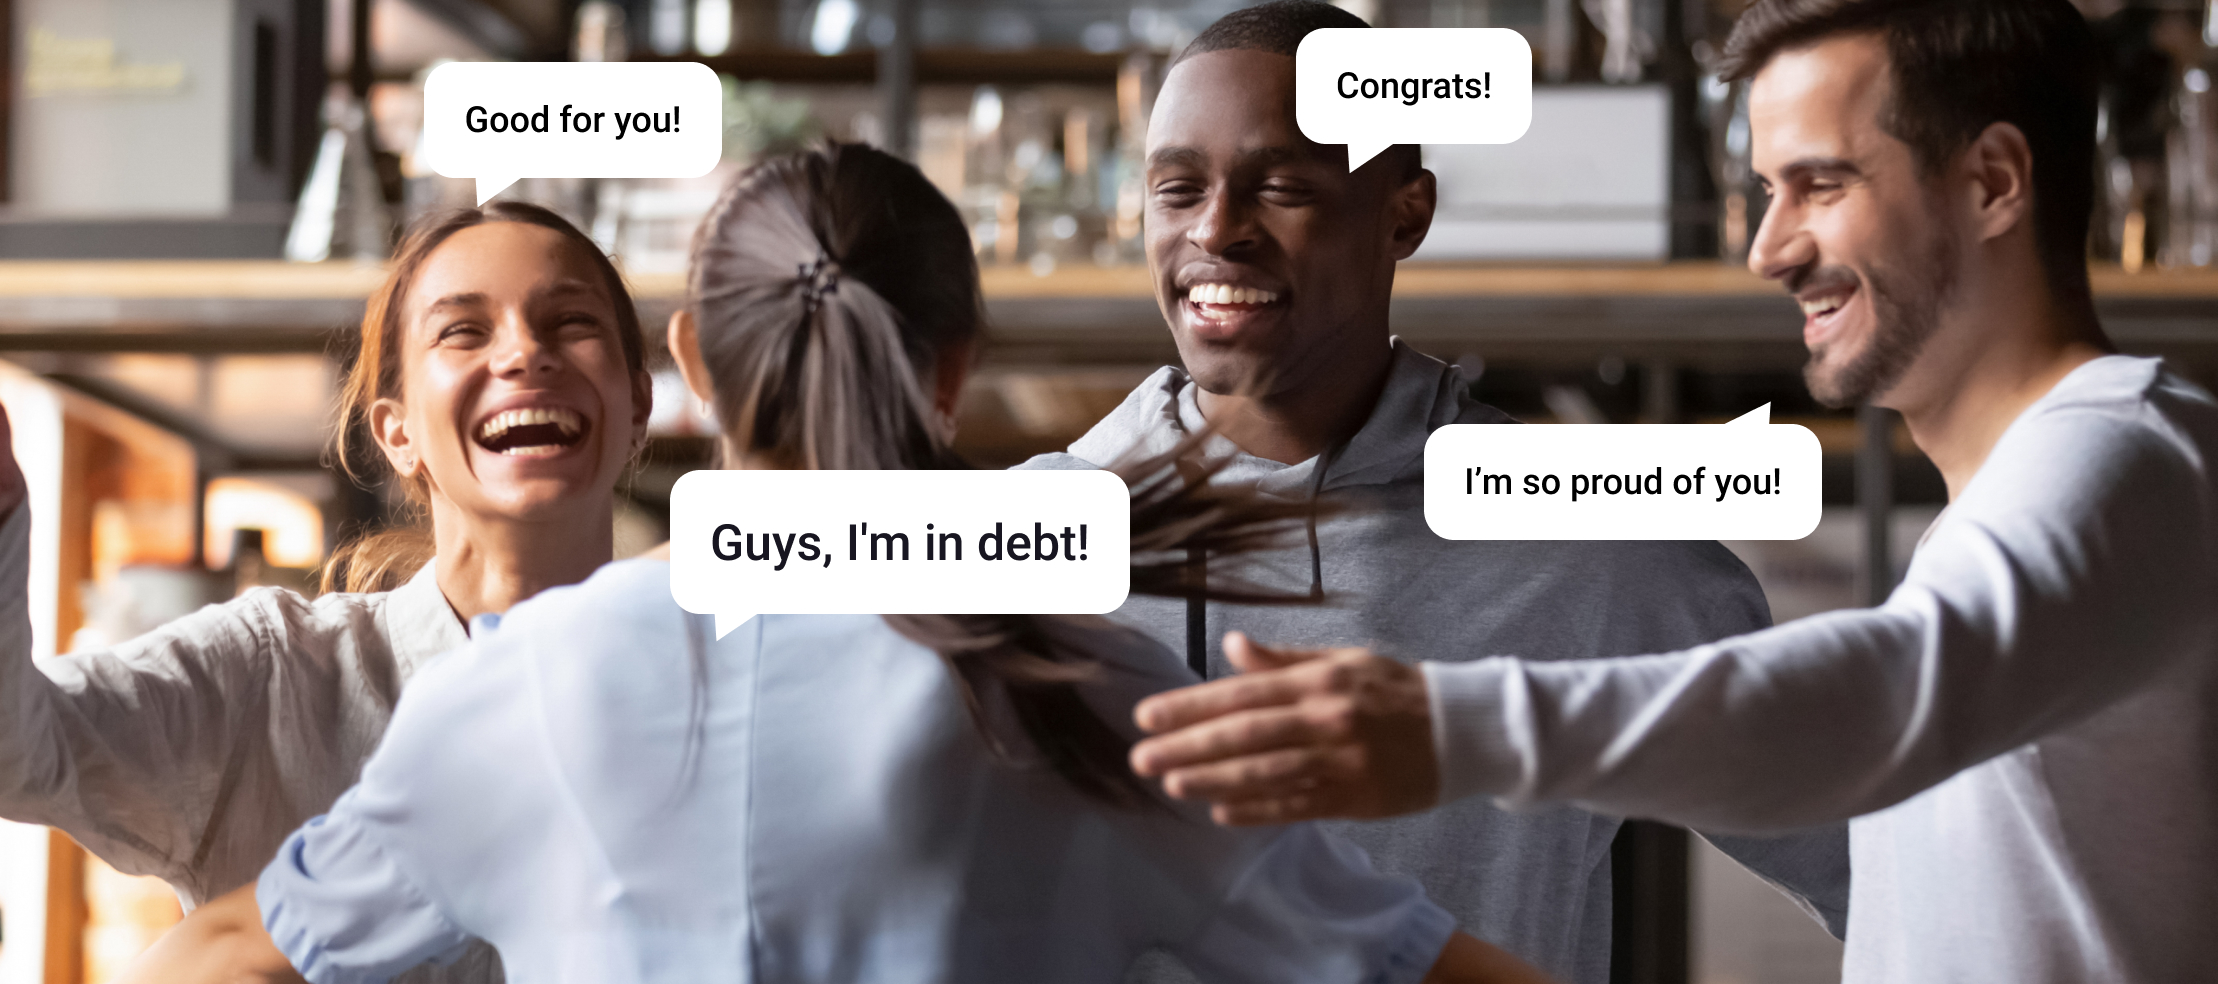 Is Debt Always Bad?